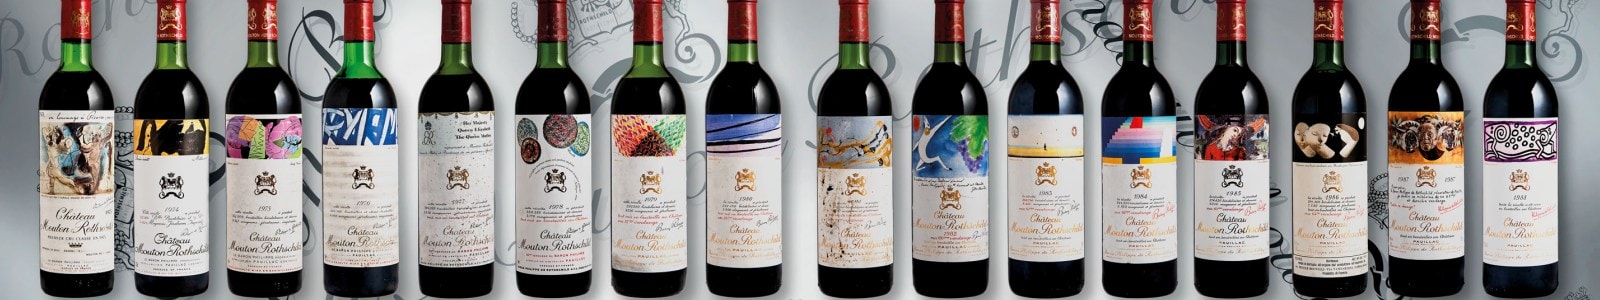 Fine and Rare Wines Featuring Wines Direct From Grandi Cru D'Italia Estates